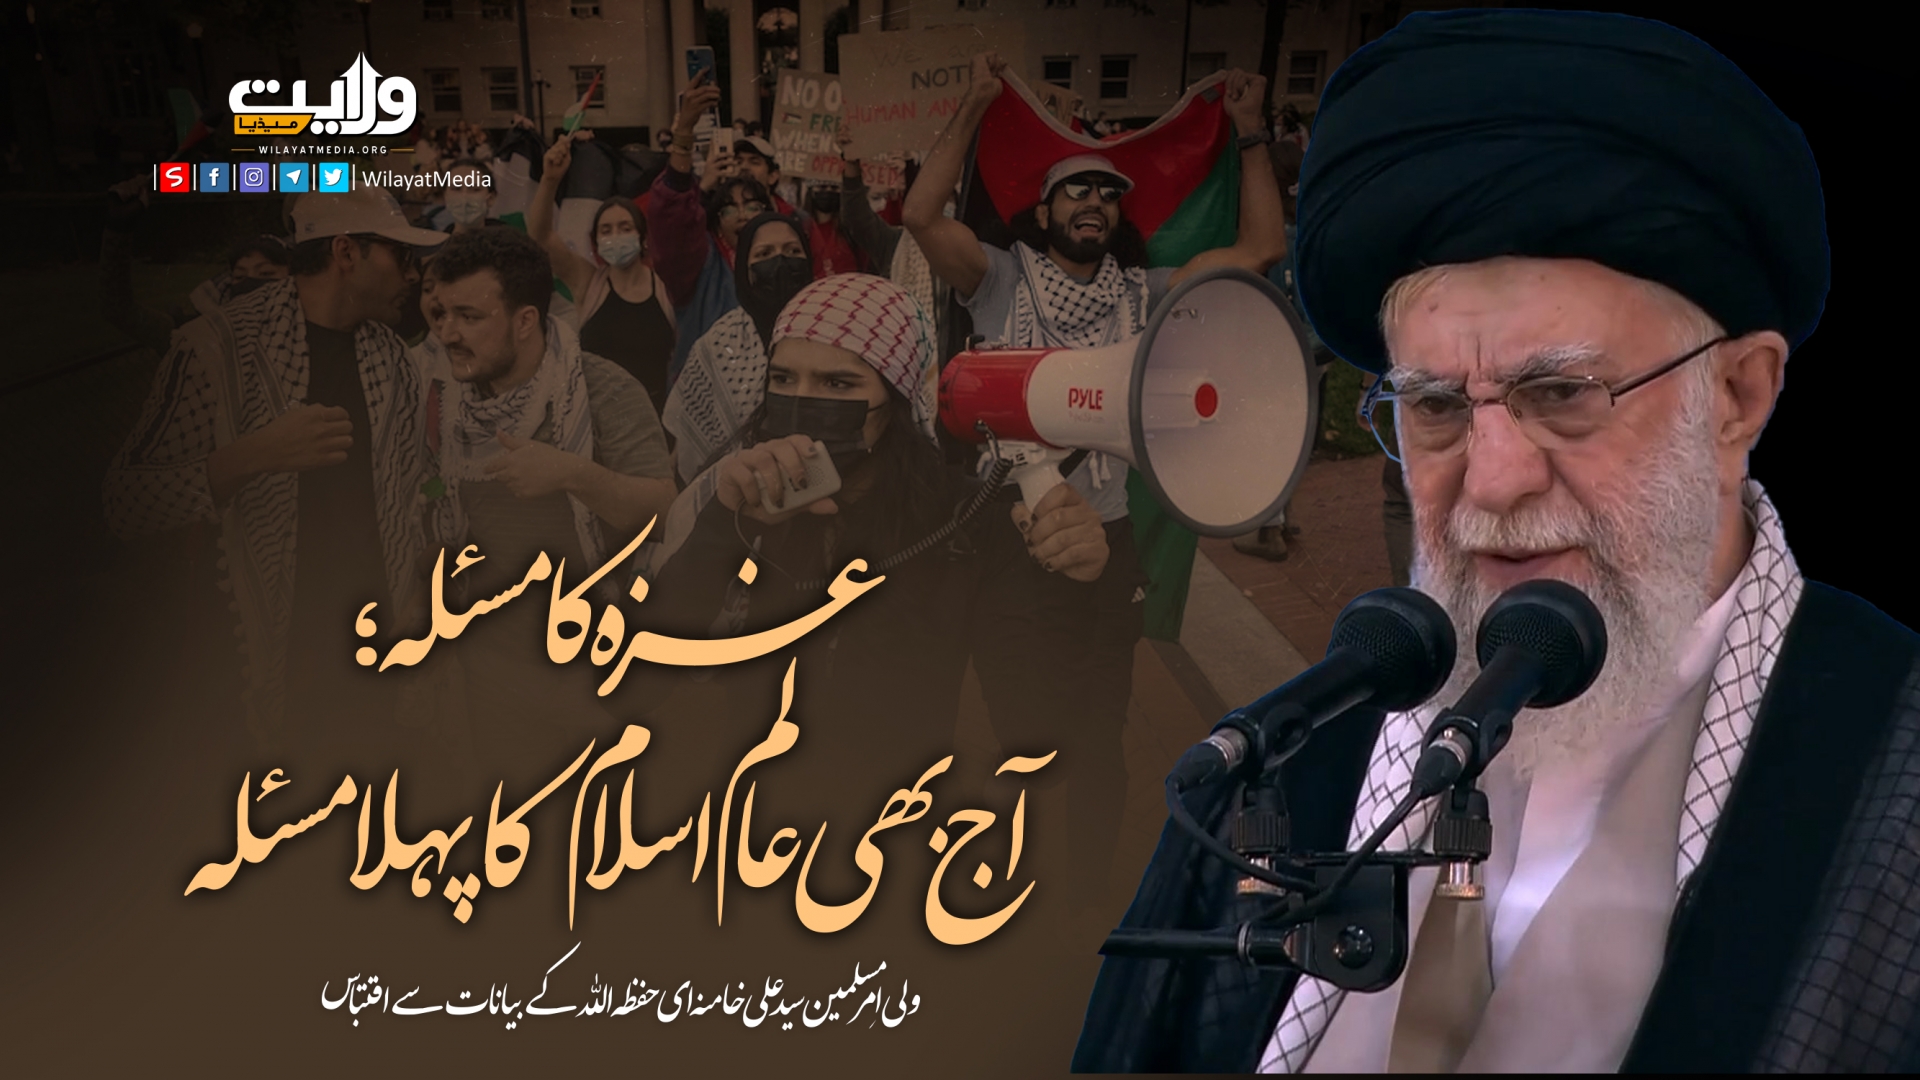 غزہ کا مسئلہ؛ آج بھی عالم اسلام کا پہلا مسئلہ | امام سید علی خامنہ ای | Farsi Sub Urdu